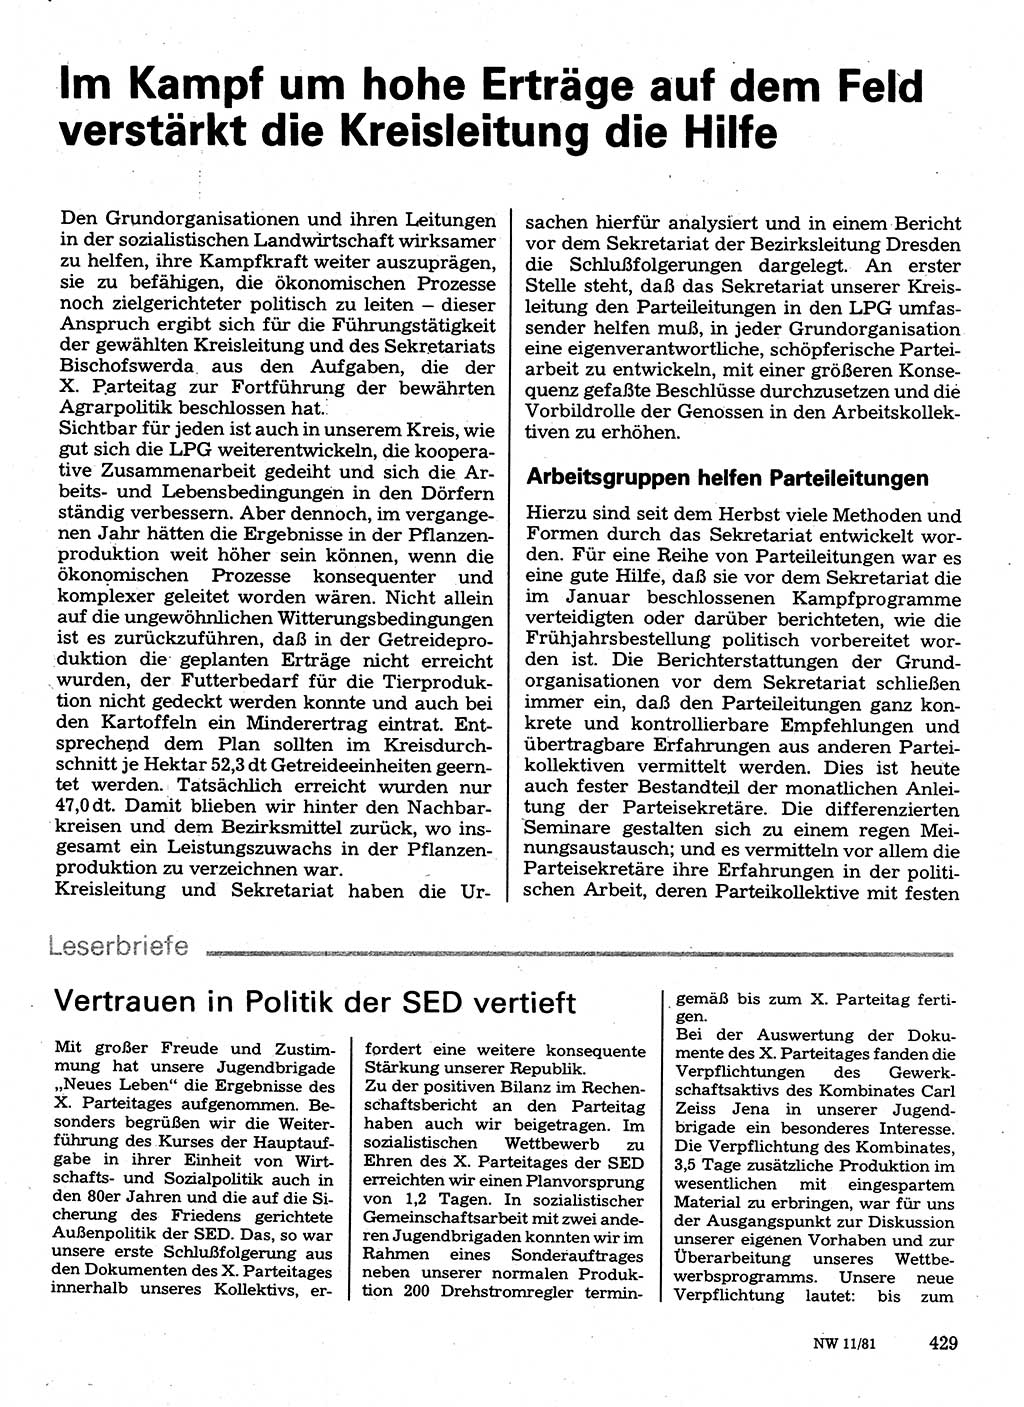 Neuer Weg (NW), Organ des Zentralkomitees (ZK) der SED (Sozialistische Einheitspartei Deutschlands) für Fragen des Parteilebens, 36. Jahrgang [Deutsche Demokratische Republik (DDR)] 1981, Seite 429 (NW ZK SED DDR 1981, S. 429)